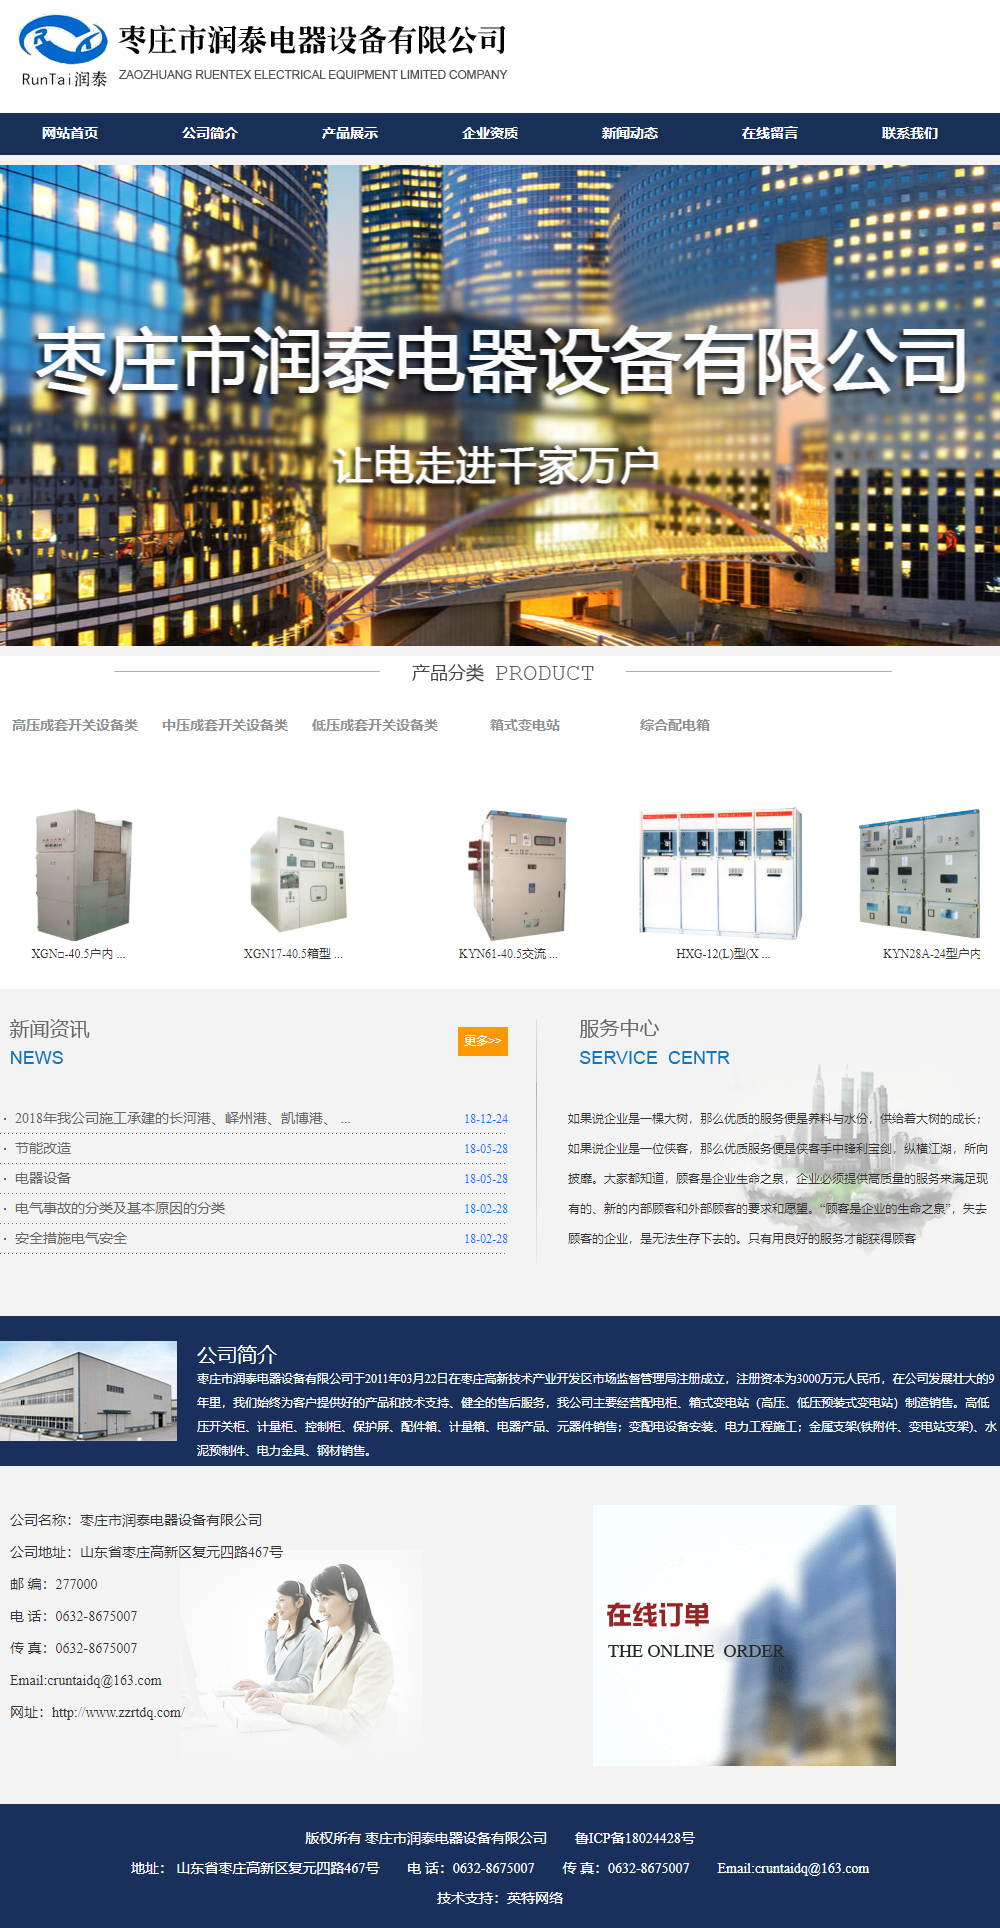 枣庄市润泰电器设备有限公司网站案例